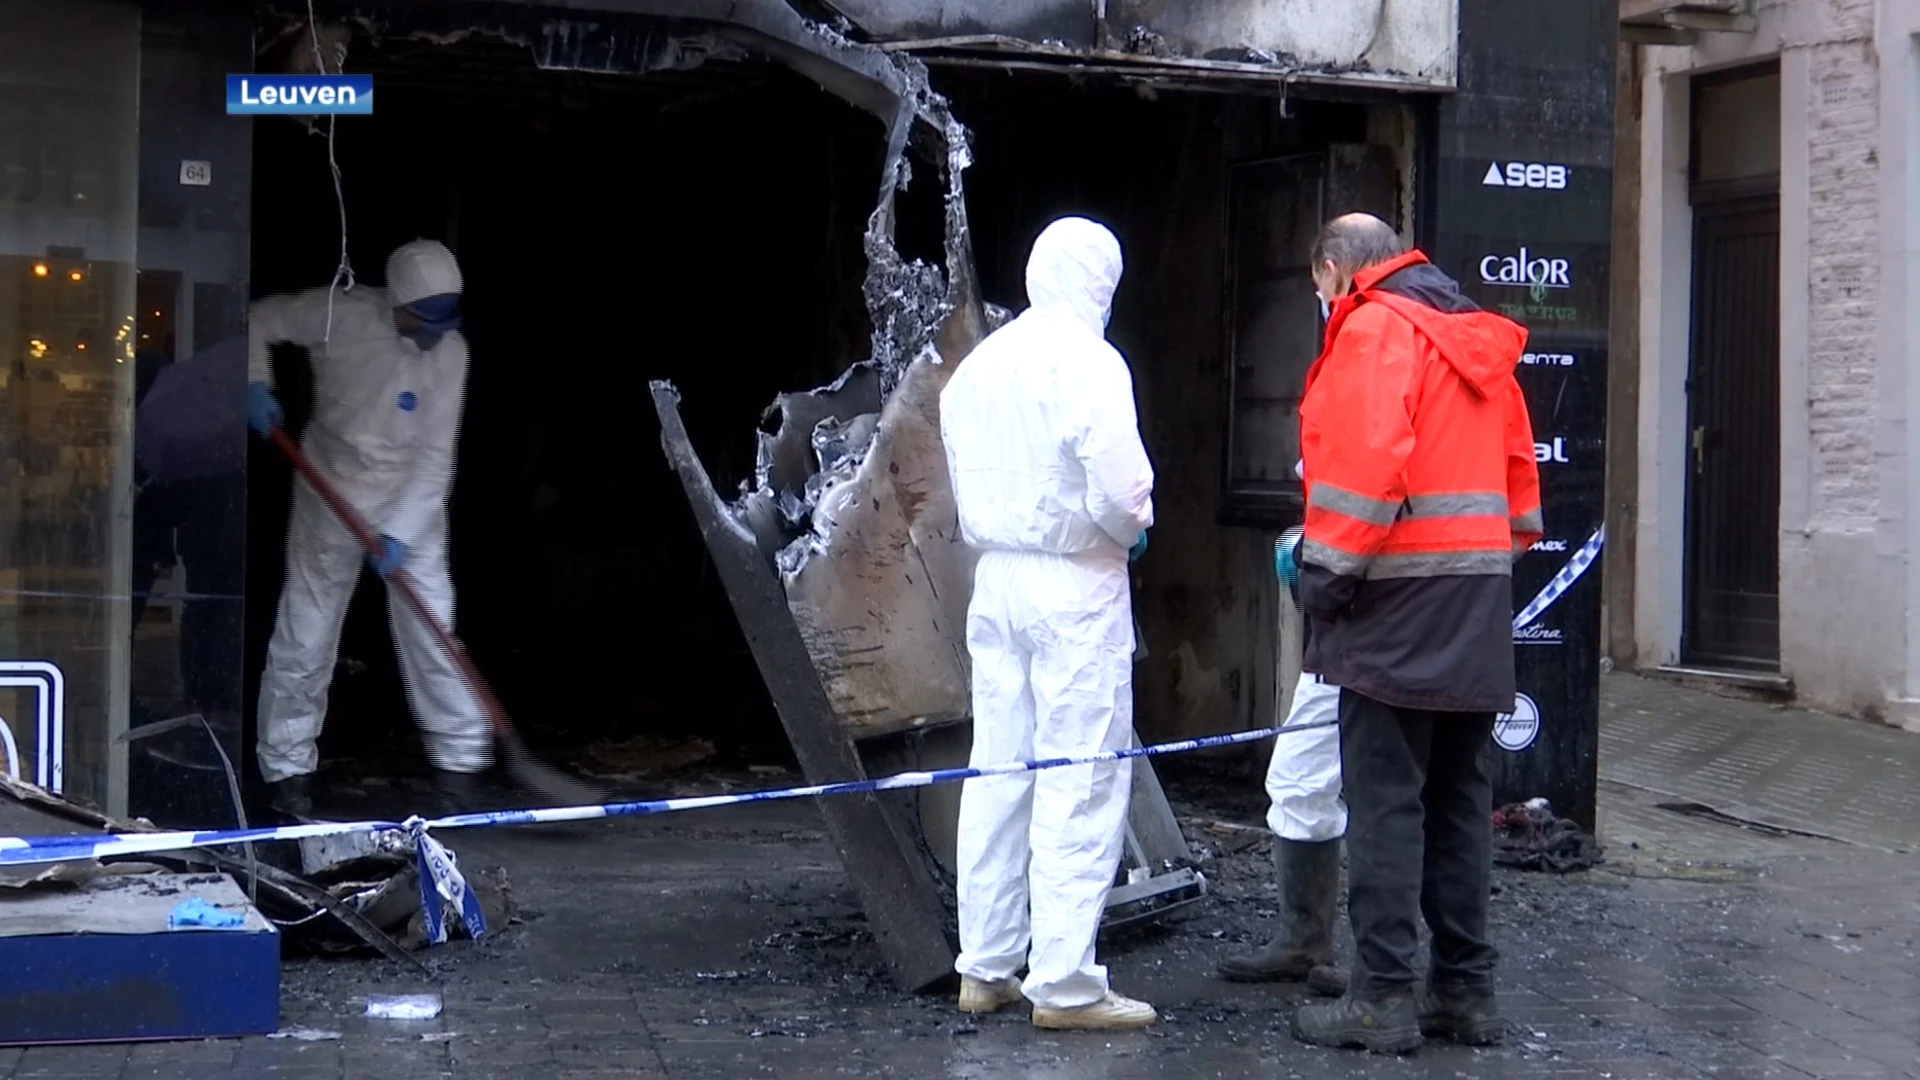 Verdachte brandstichting Diestsestraat Leuven blijft voorlopig aangehouden